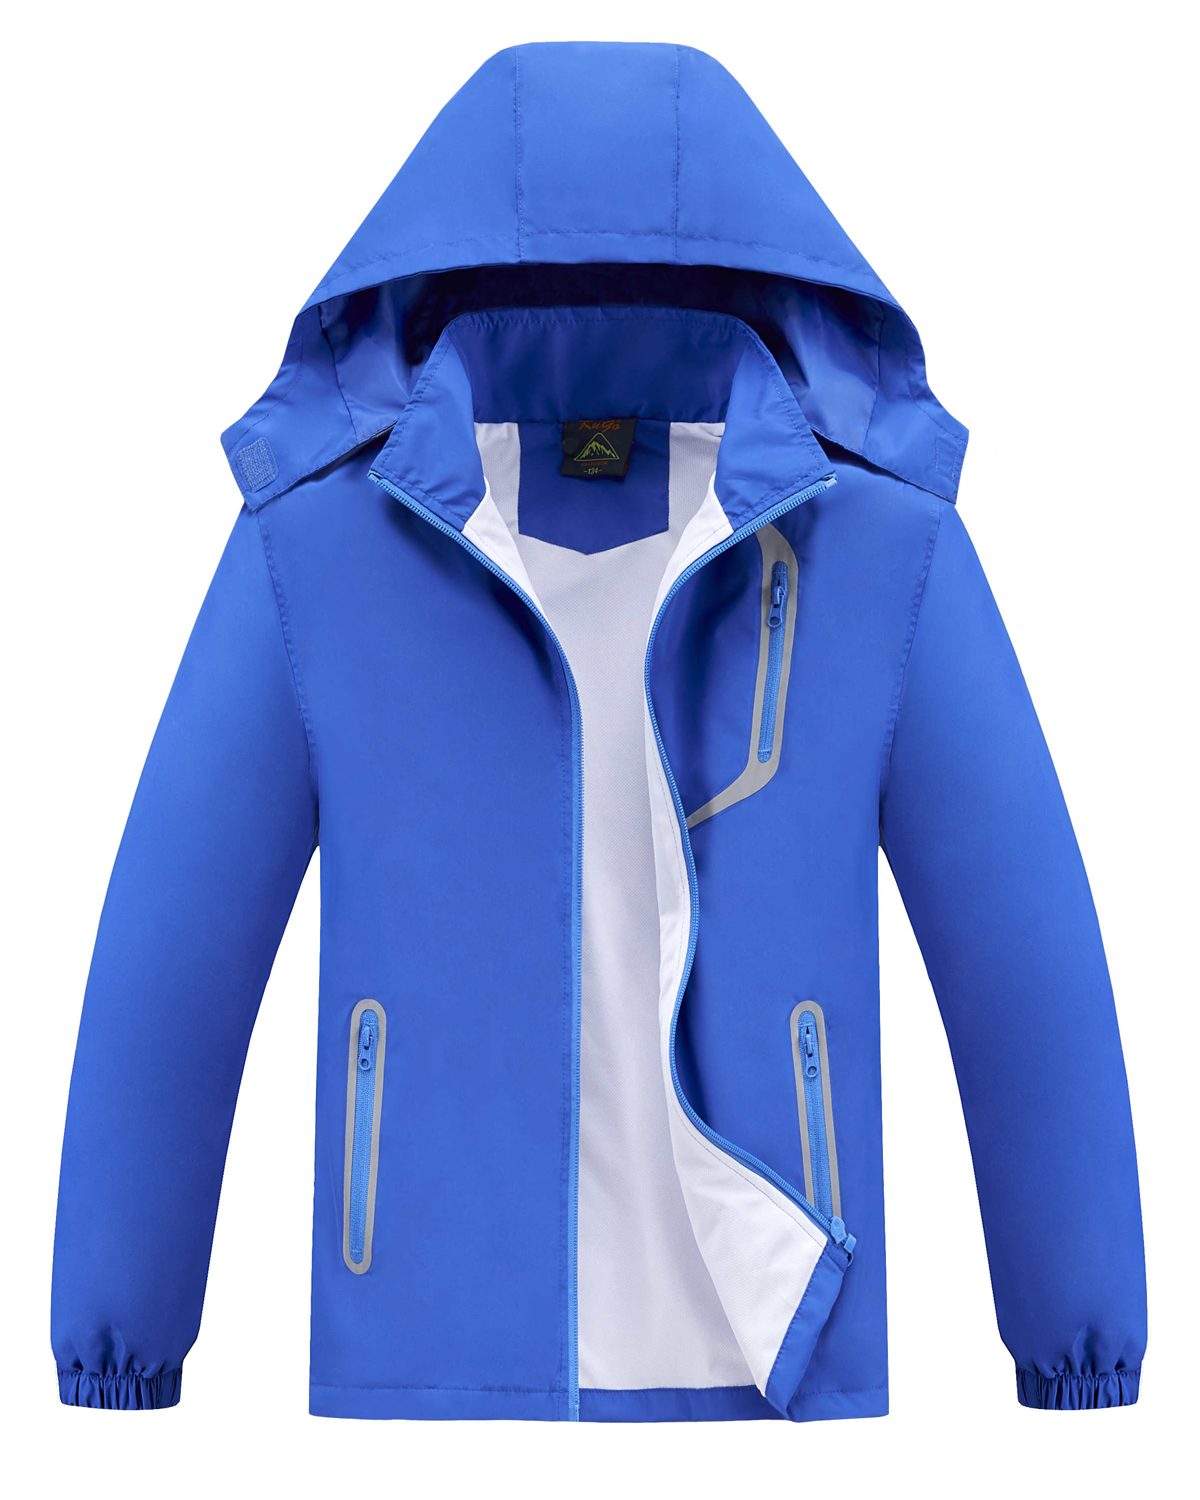 Levně Chlapecká jarní, podzimní bunda - KUGO B2868, modrá Barva: Modrá